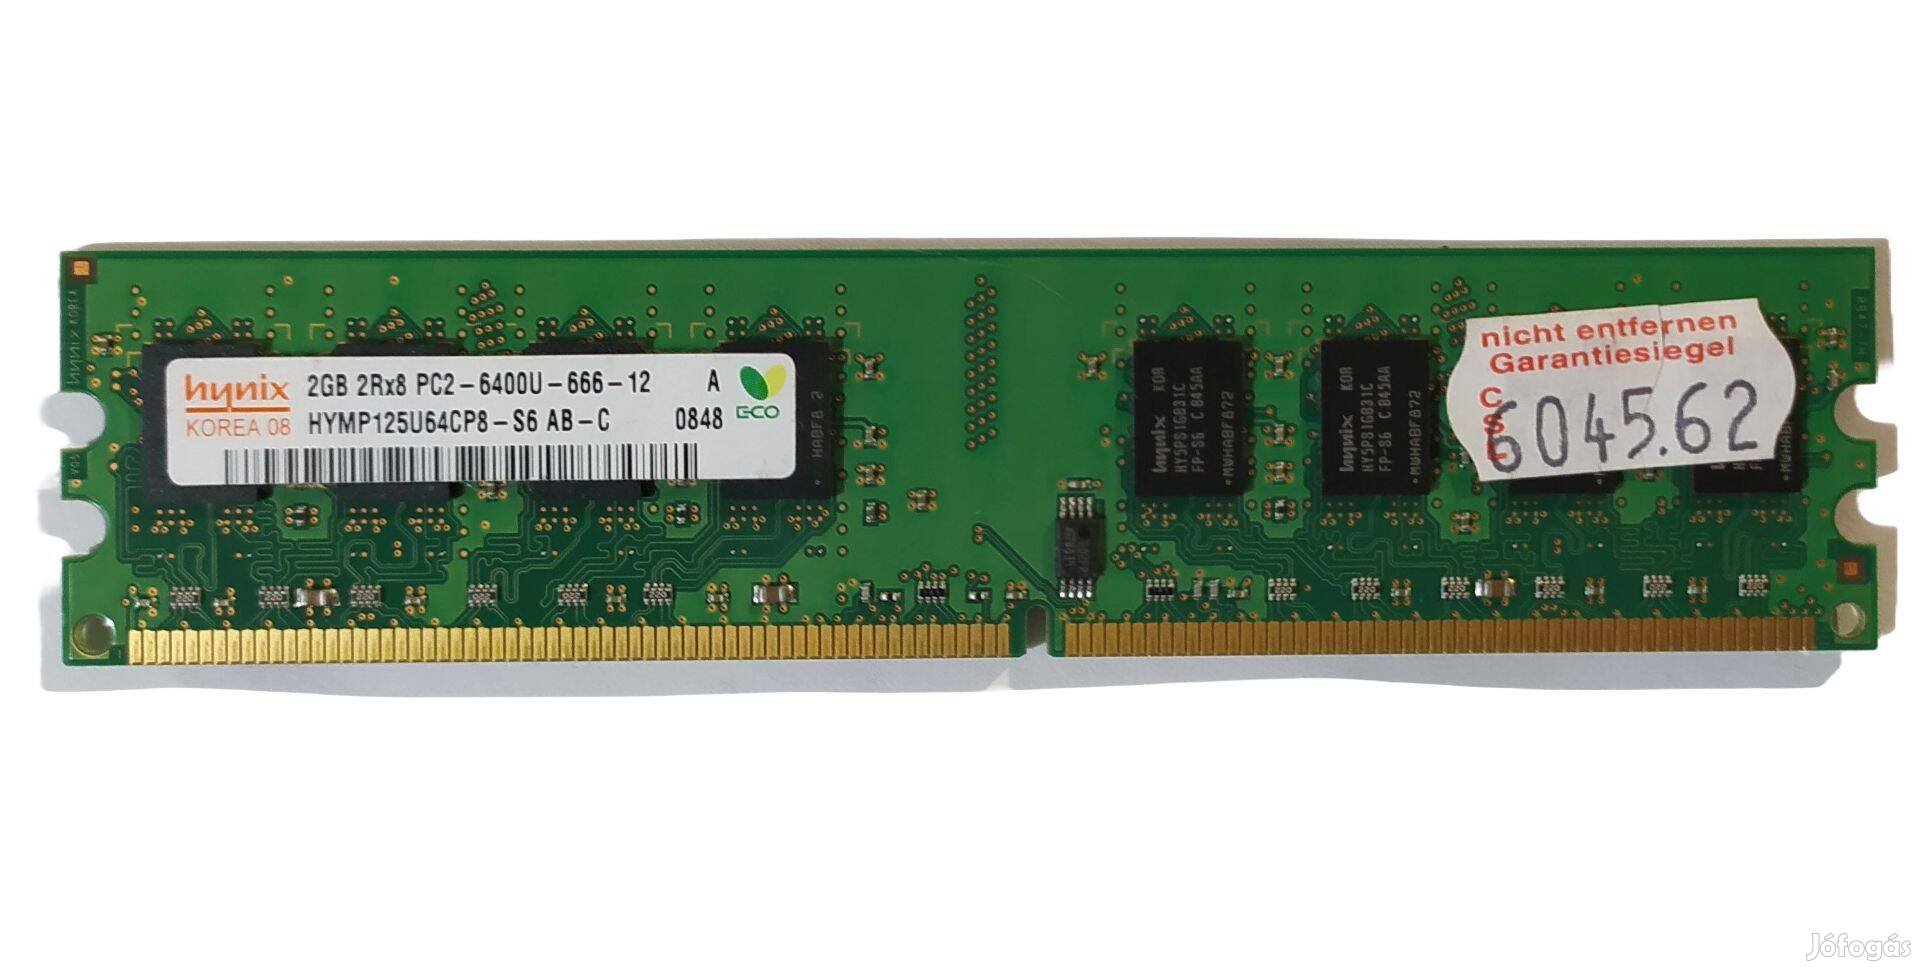 Hynix 2GB DDR2 800MHz memória